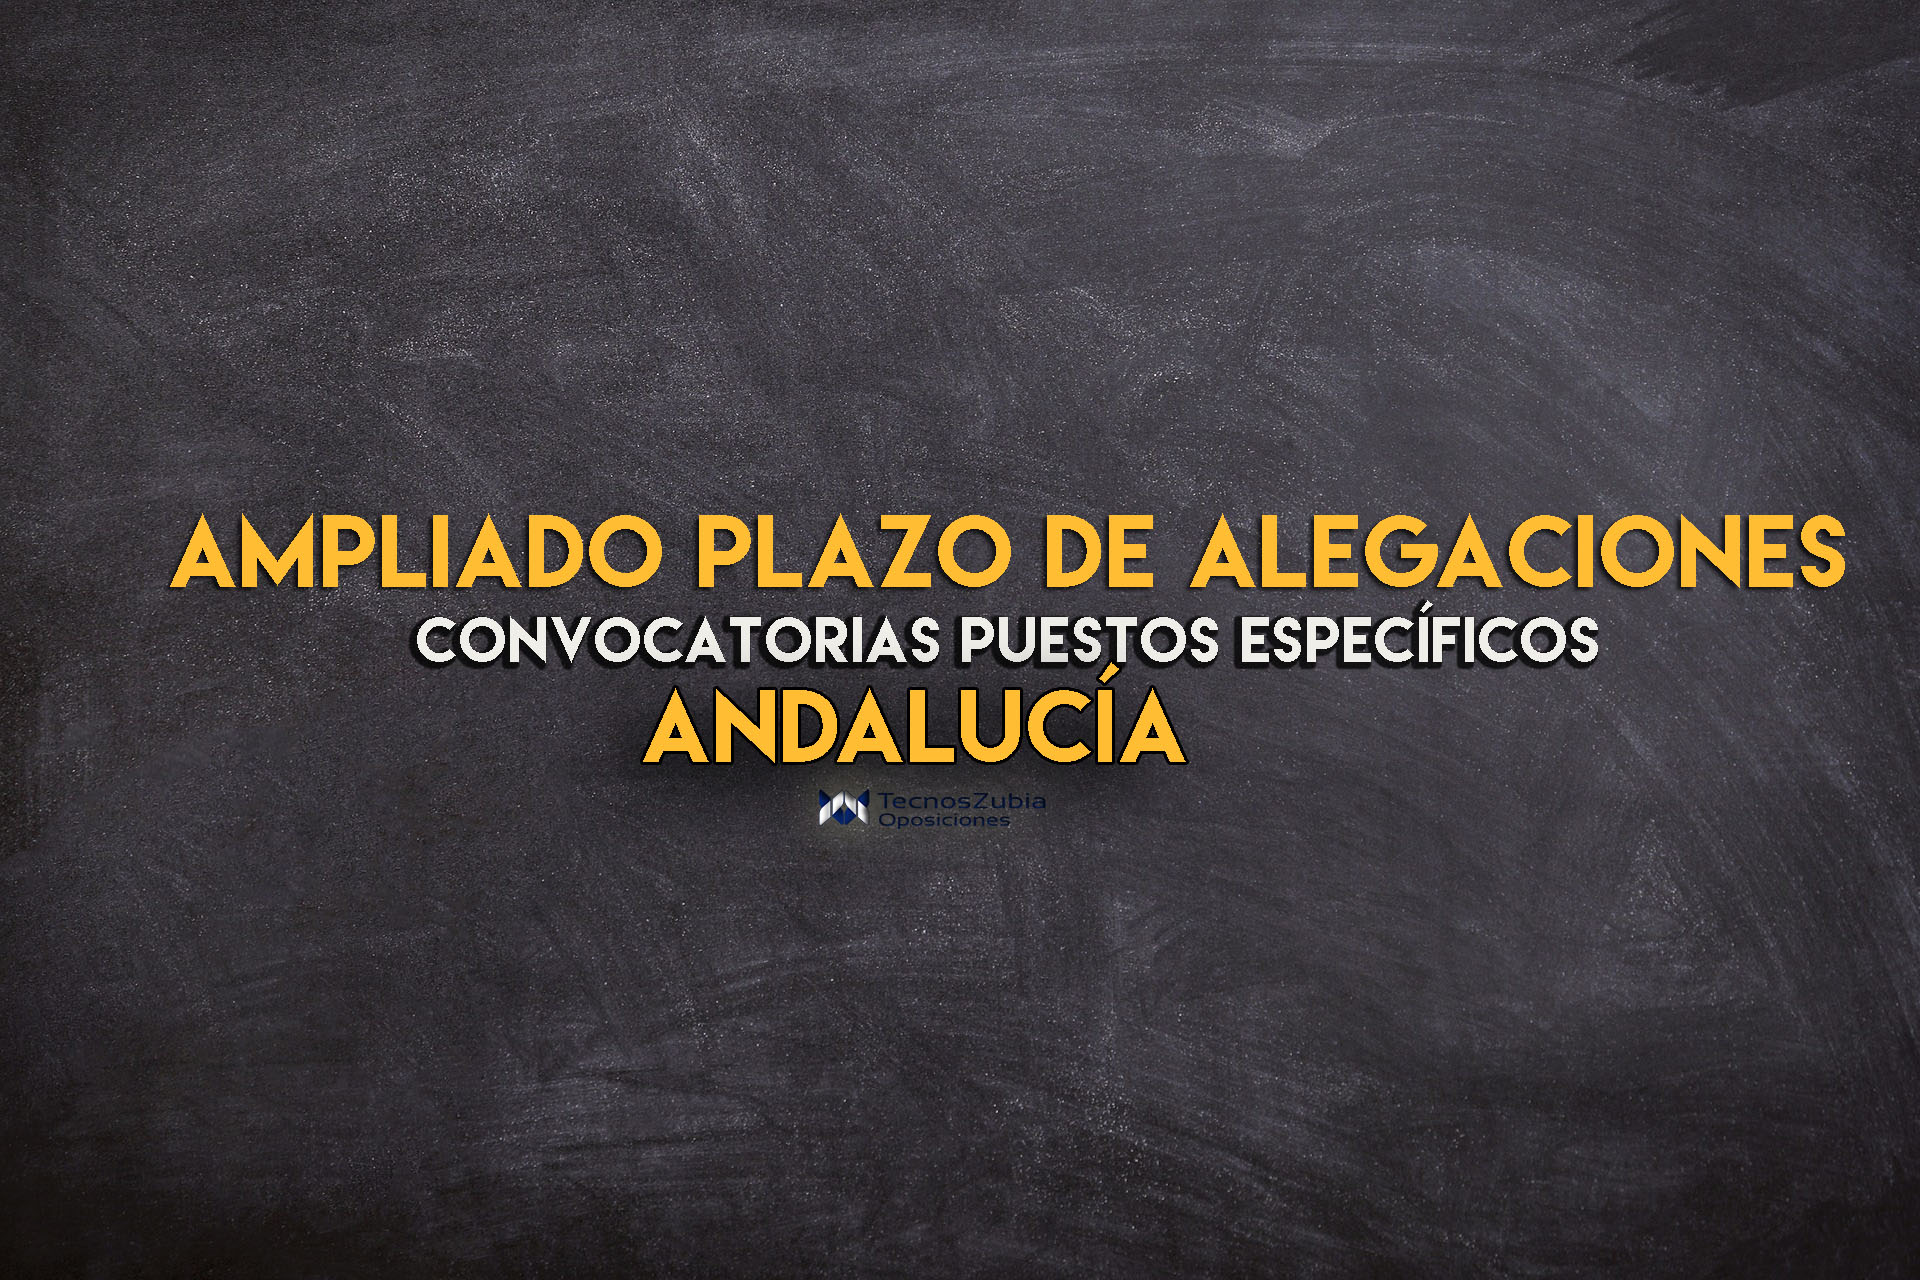 Ampliación plazo de alegaciones. Convocatorias puestos específicos. Andalucía.